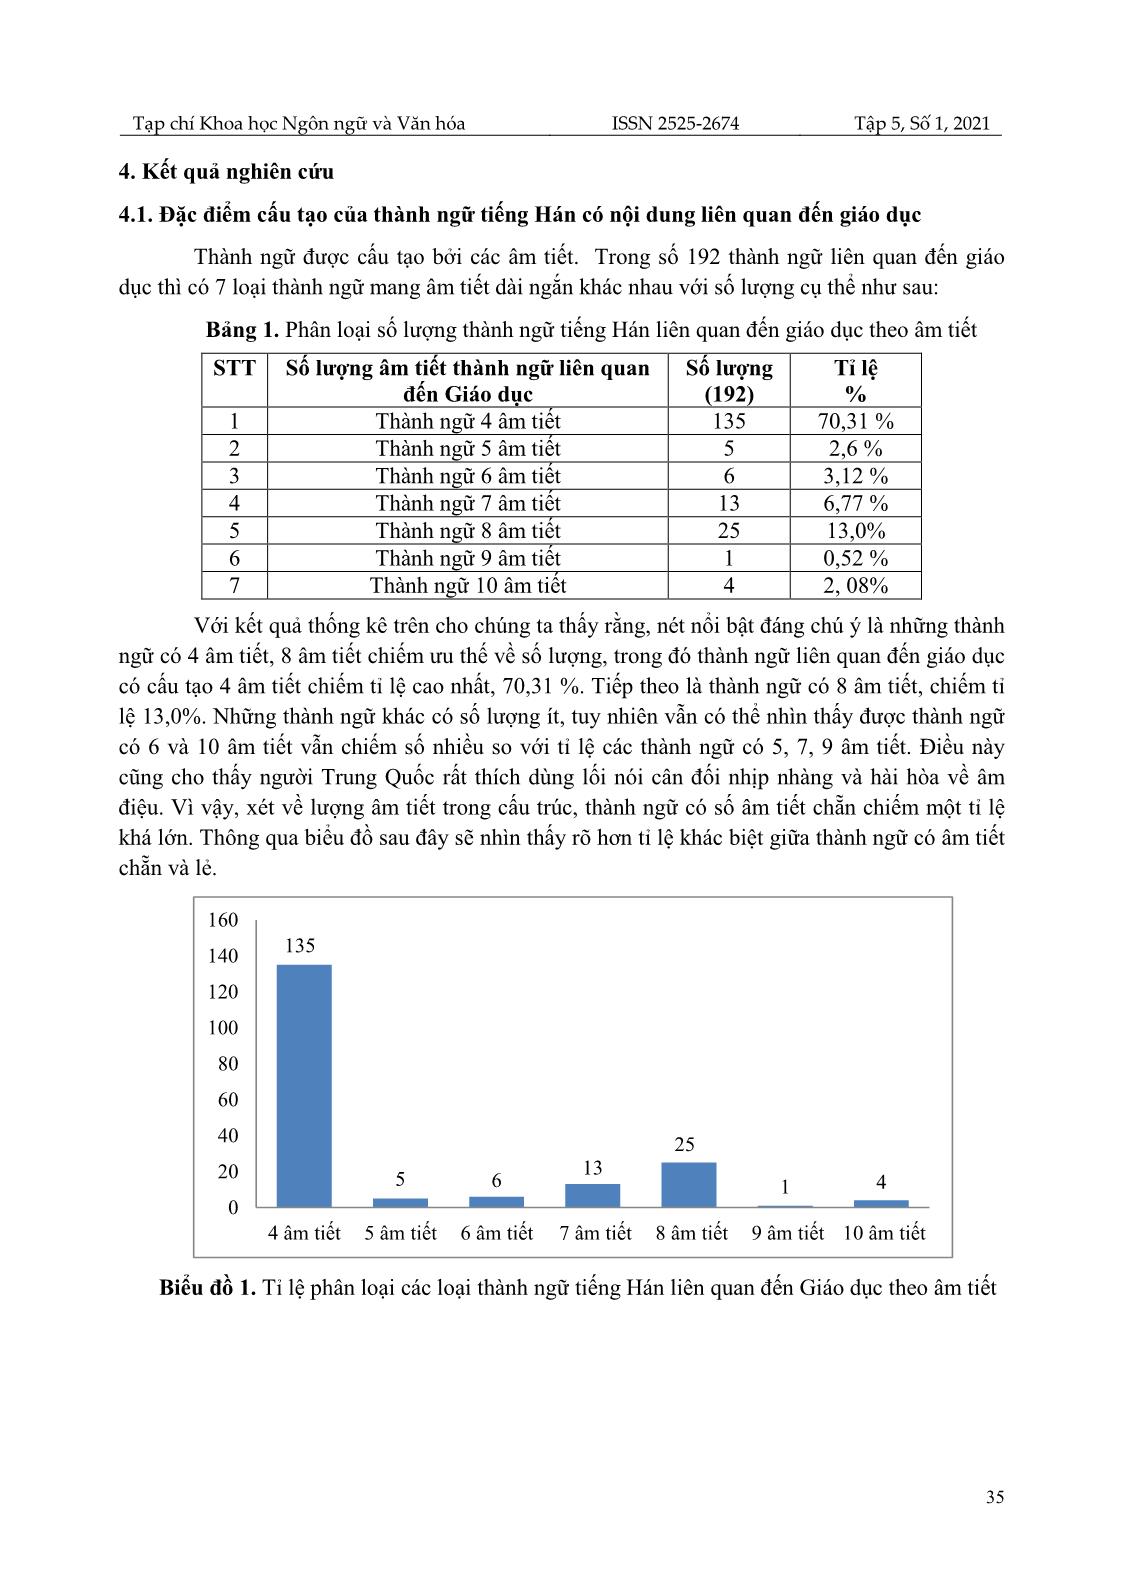 Phân tích đặc điểm thành ngữ liên quan đến giáo dục trong tiếng Hán trang 6